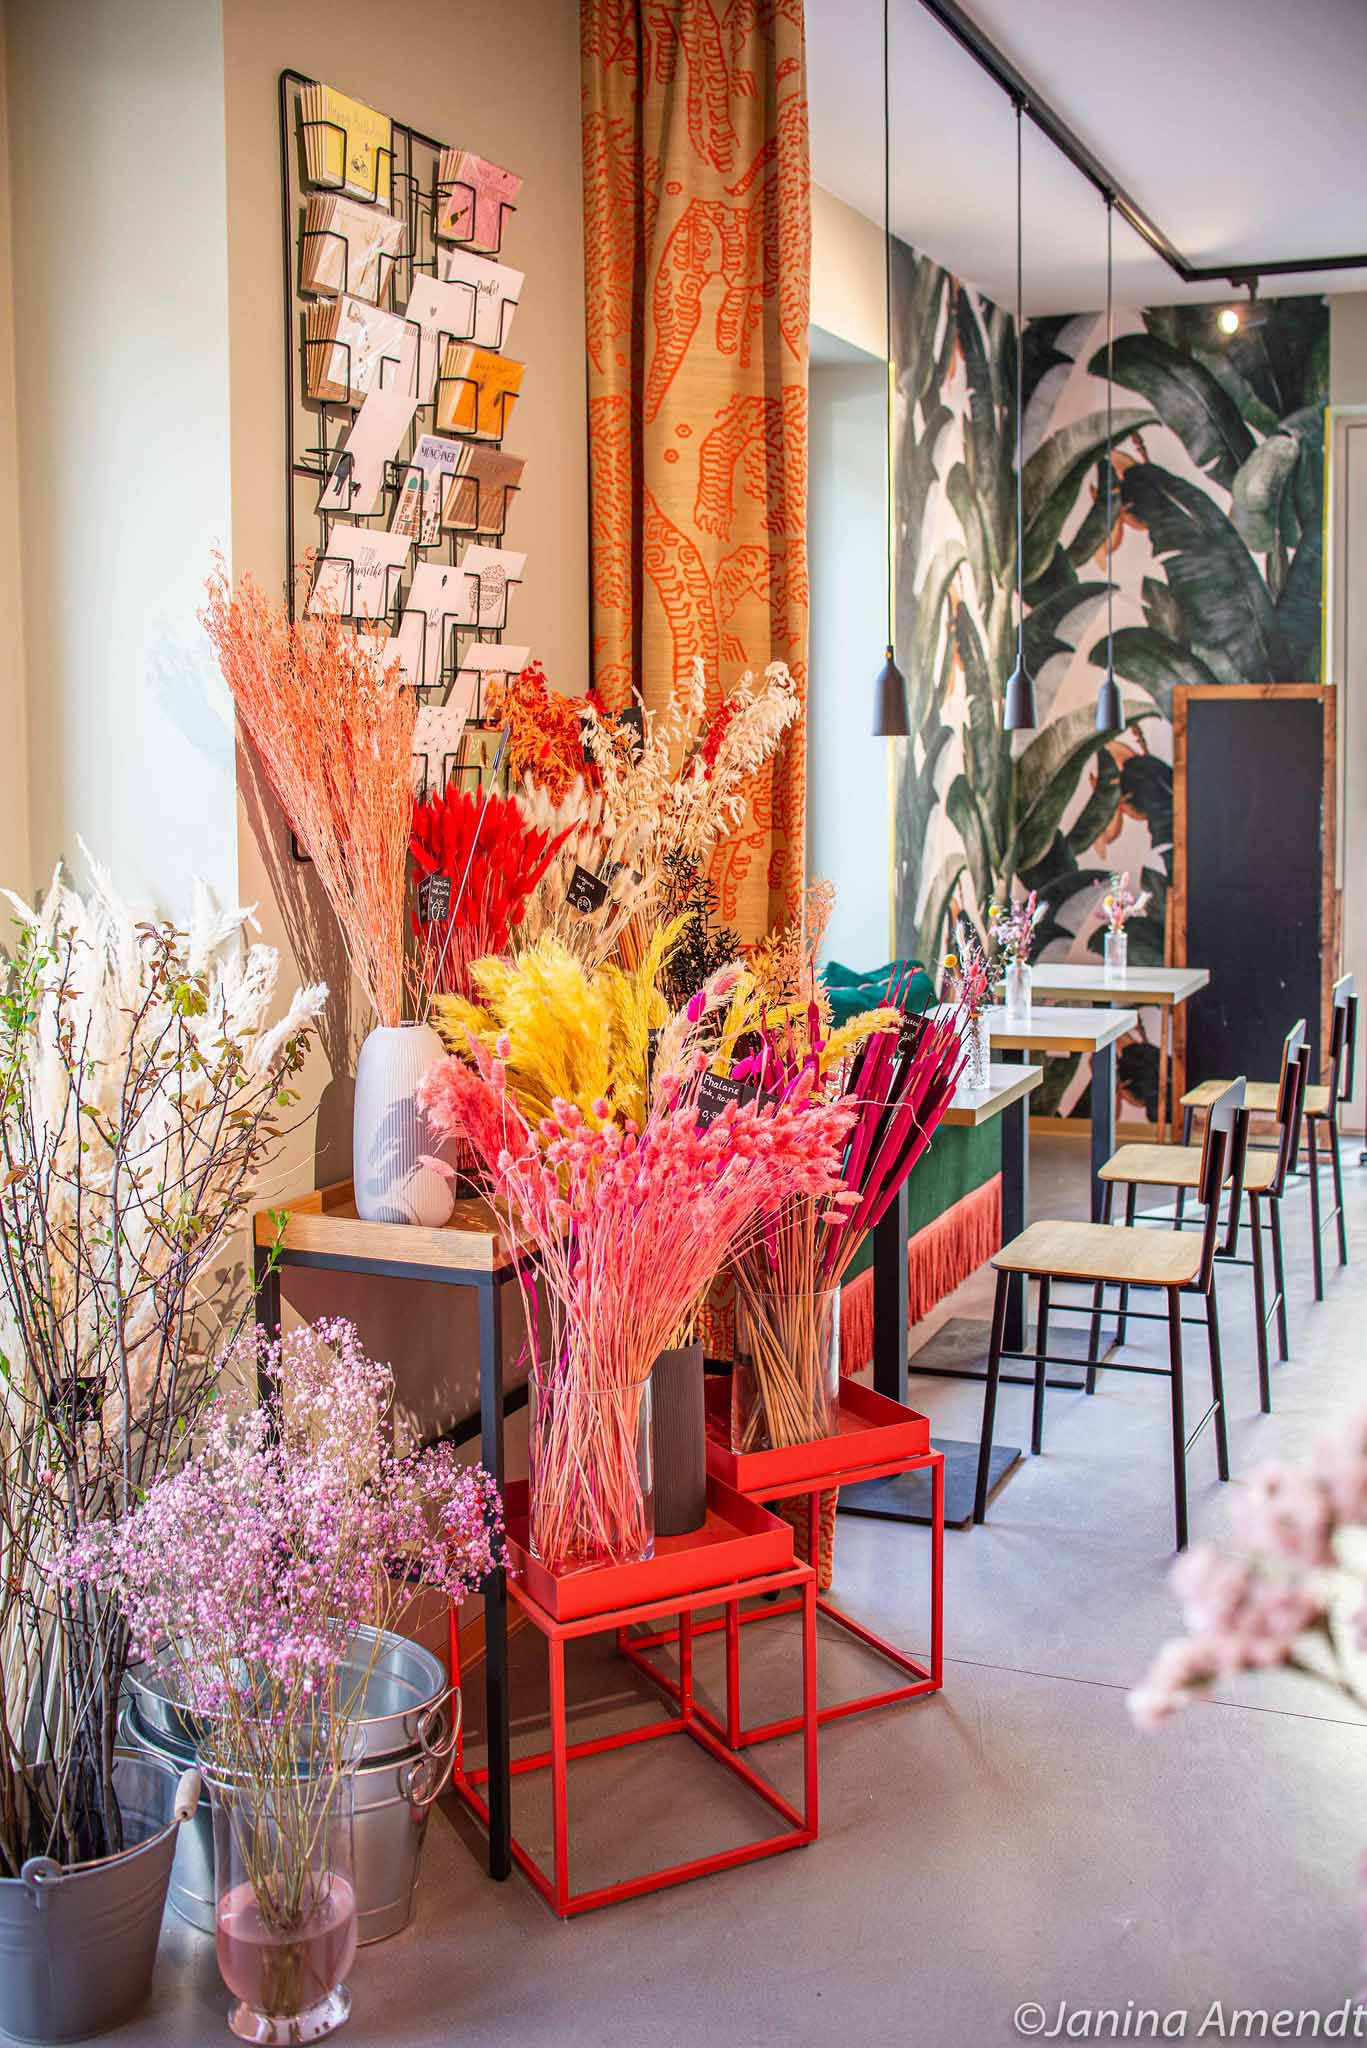 Rotari Café & blooms in der Maxvorstadt